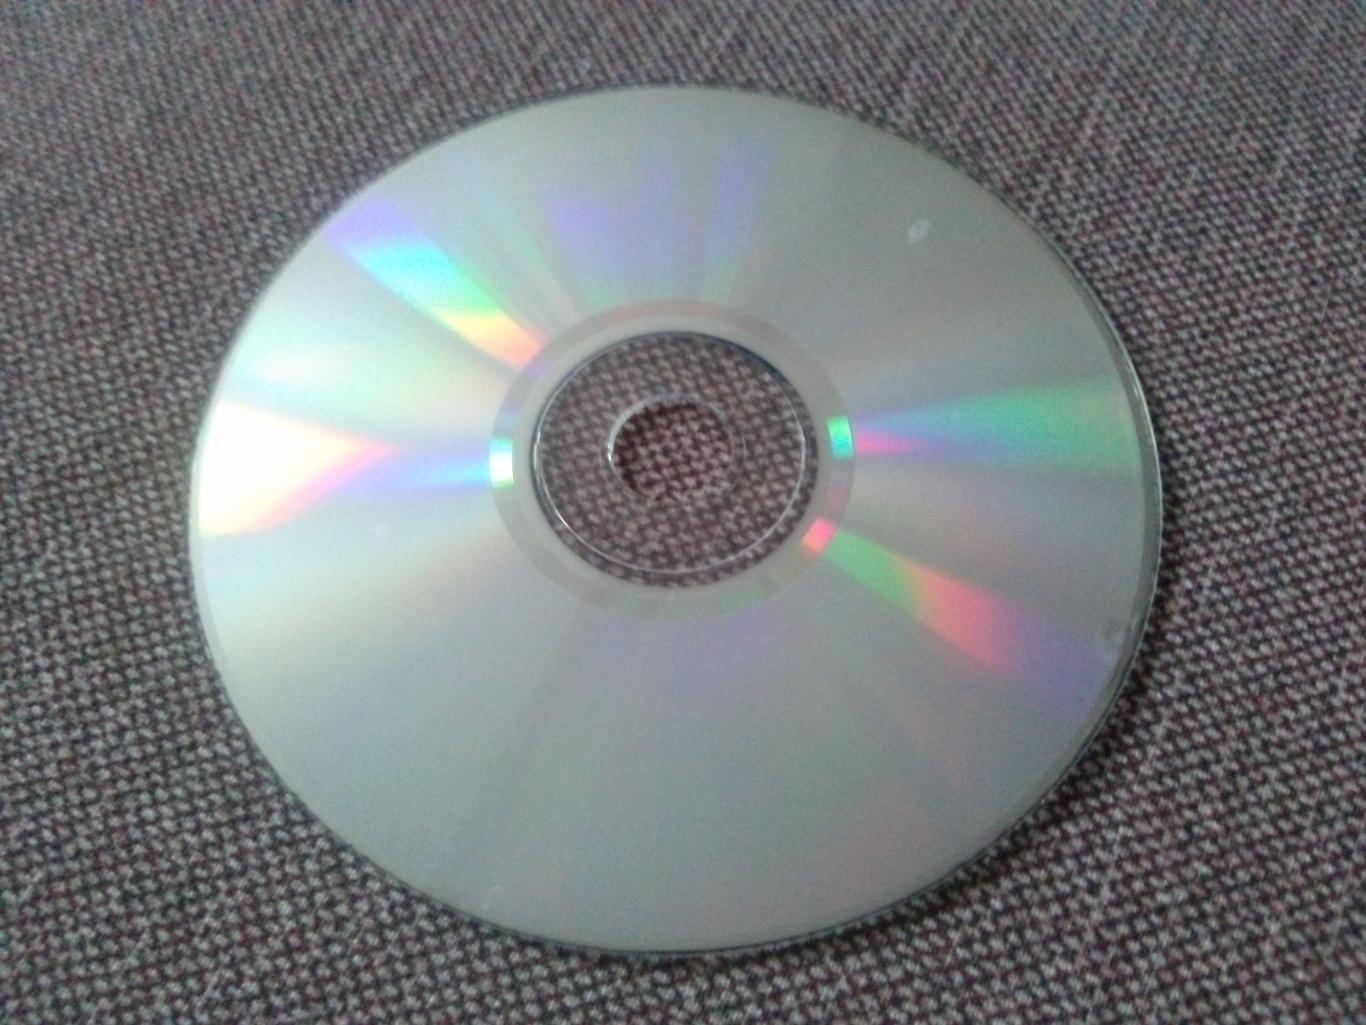 MP - 3 CD диск : Дима Билан 2004 - 2008 гг. (5 альбомов) Российская поп - музыка 6